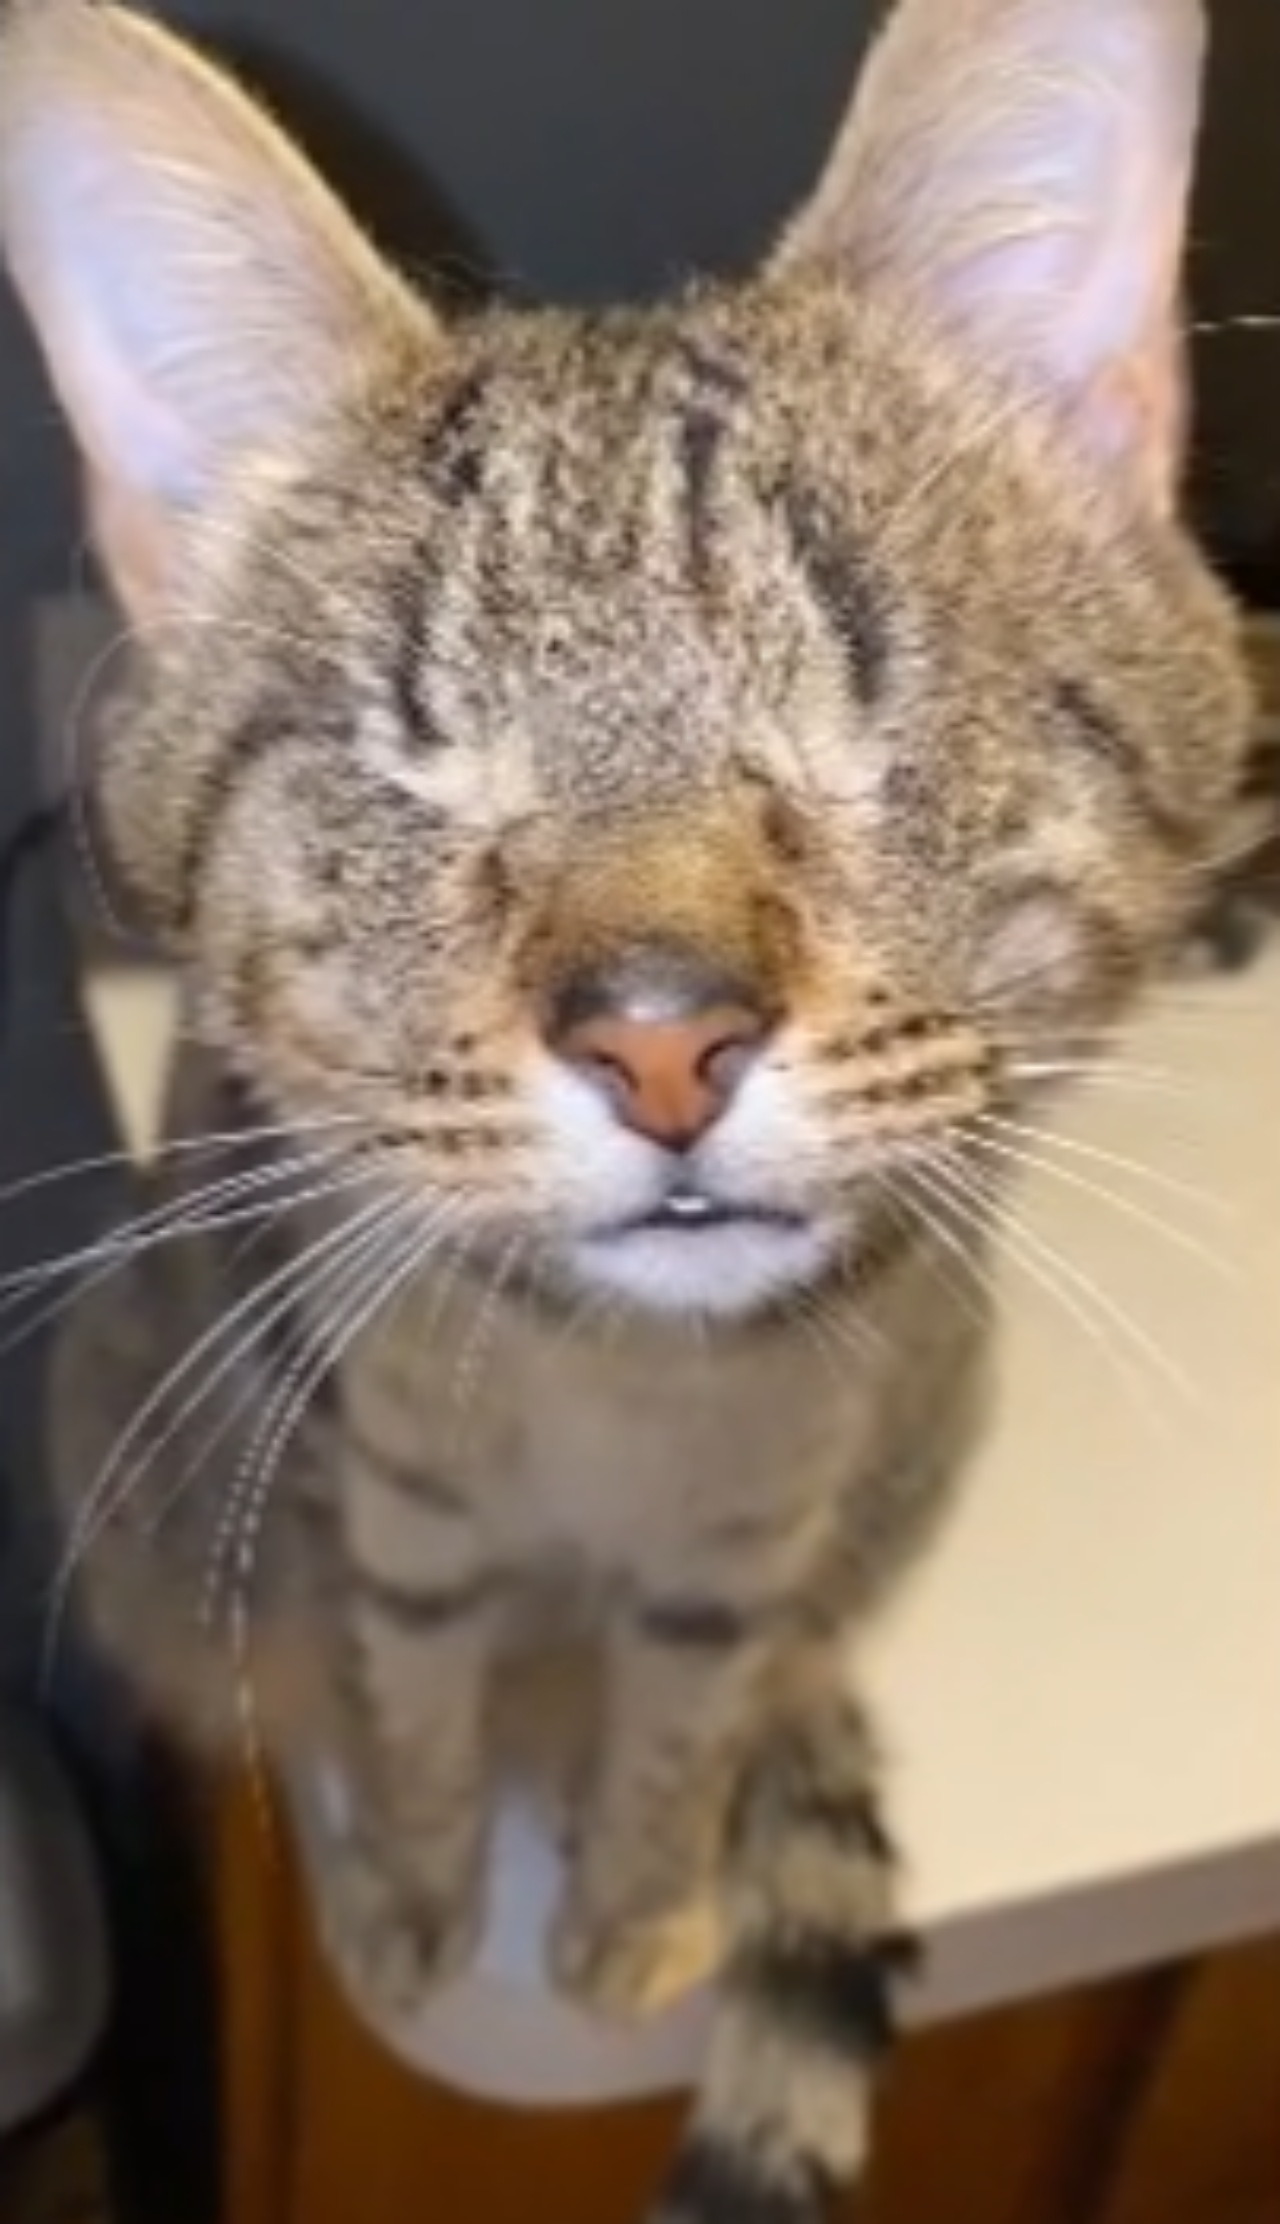 Gattina cieca riconosce l'odore della sua proprietaria